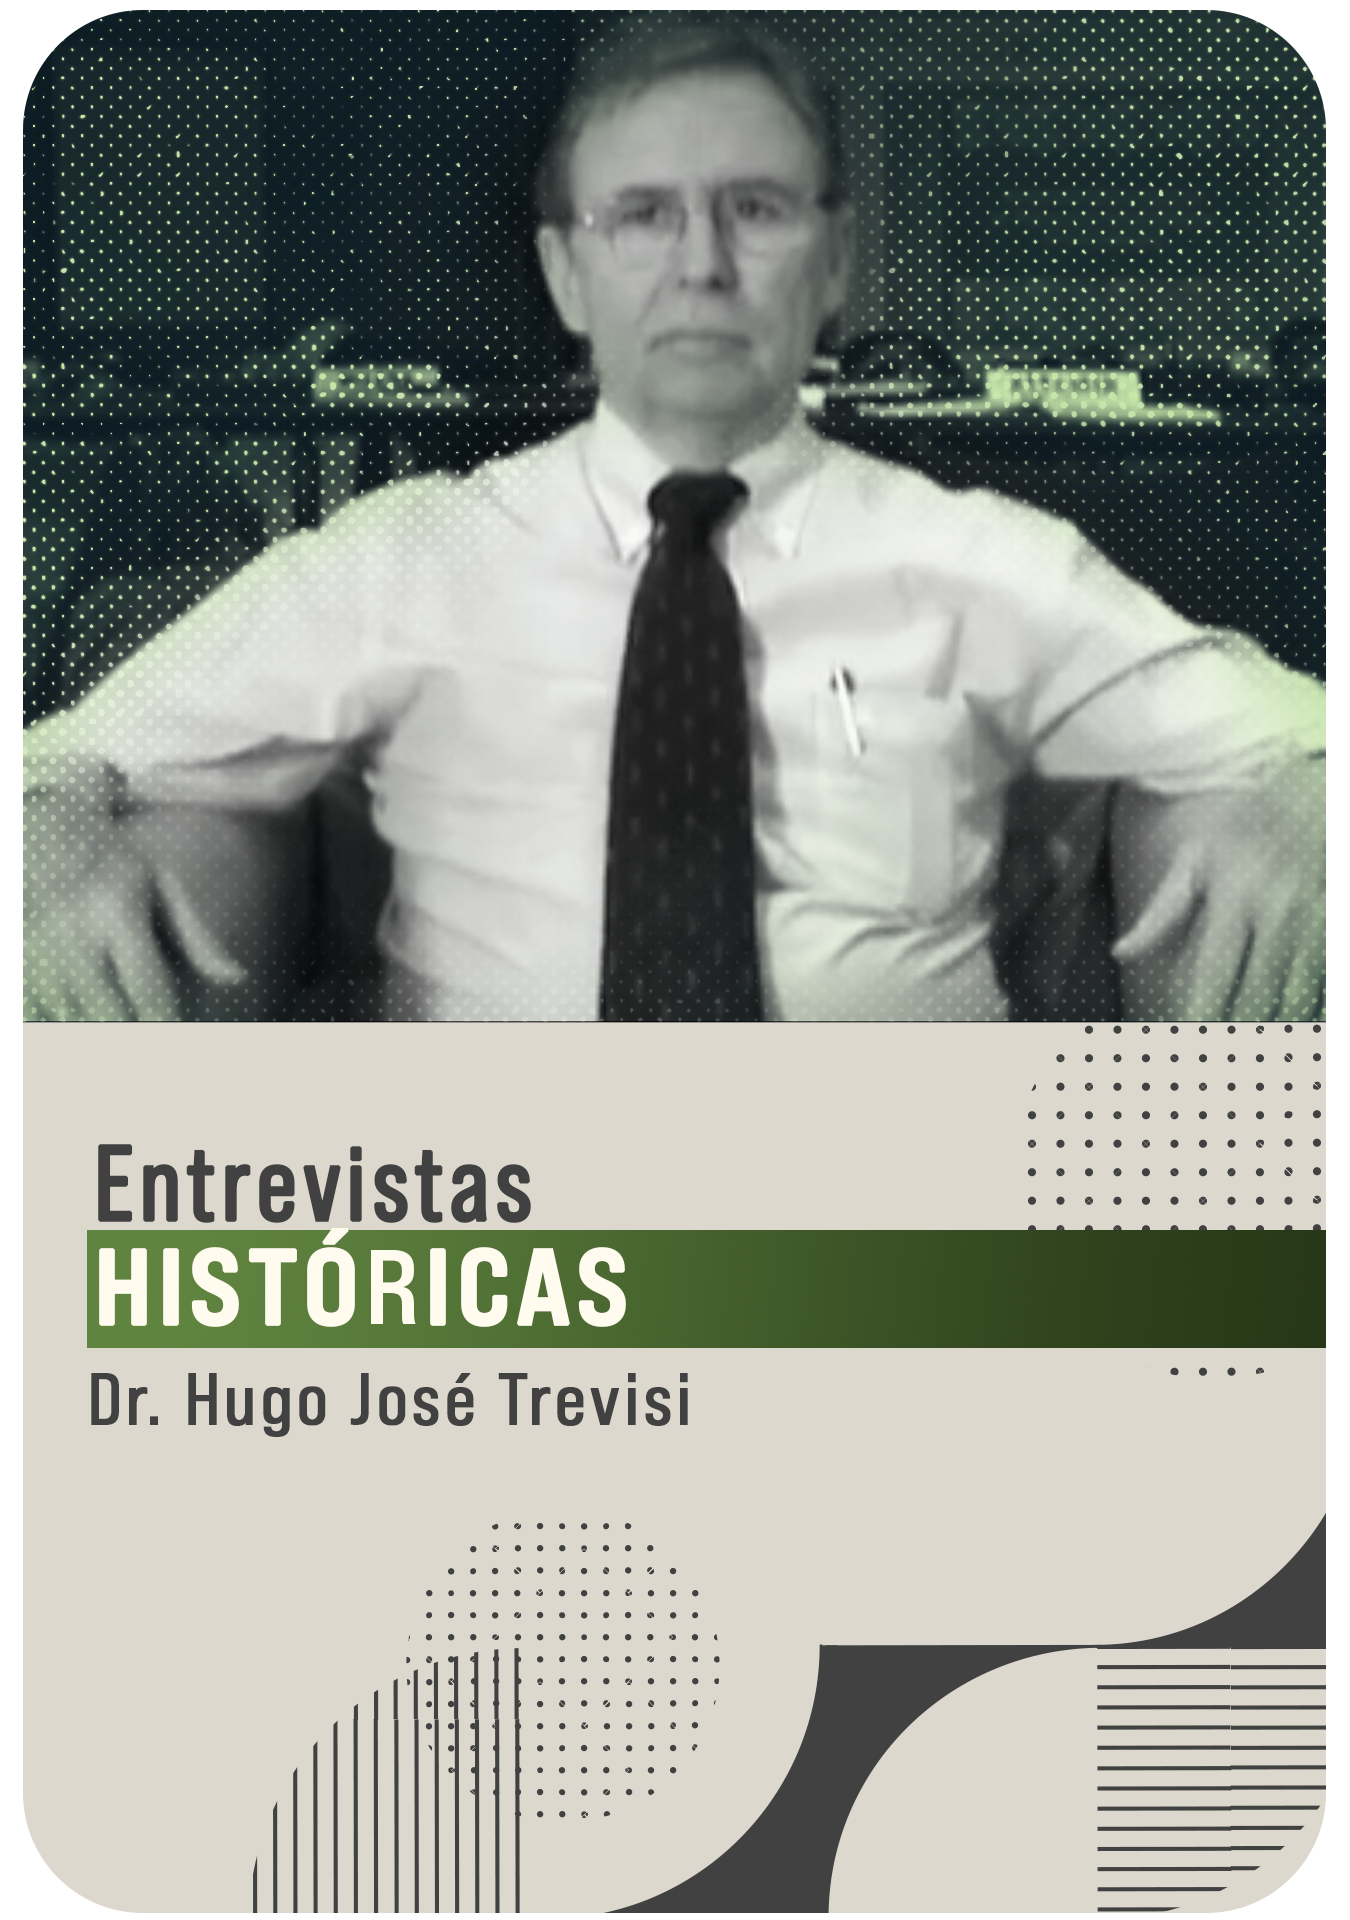 Dr. Hugo José Trevisi